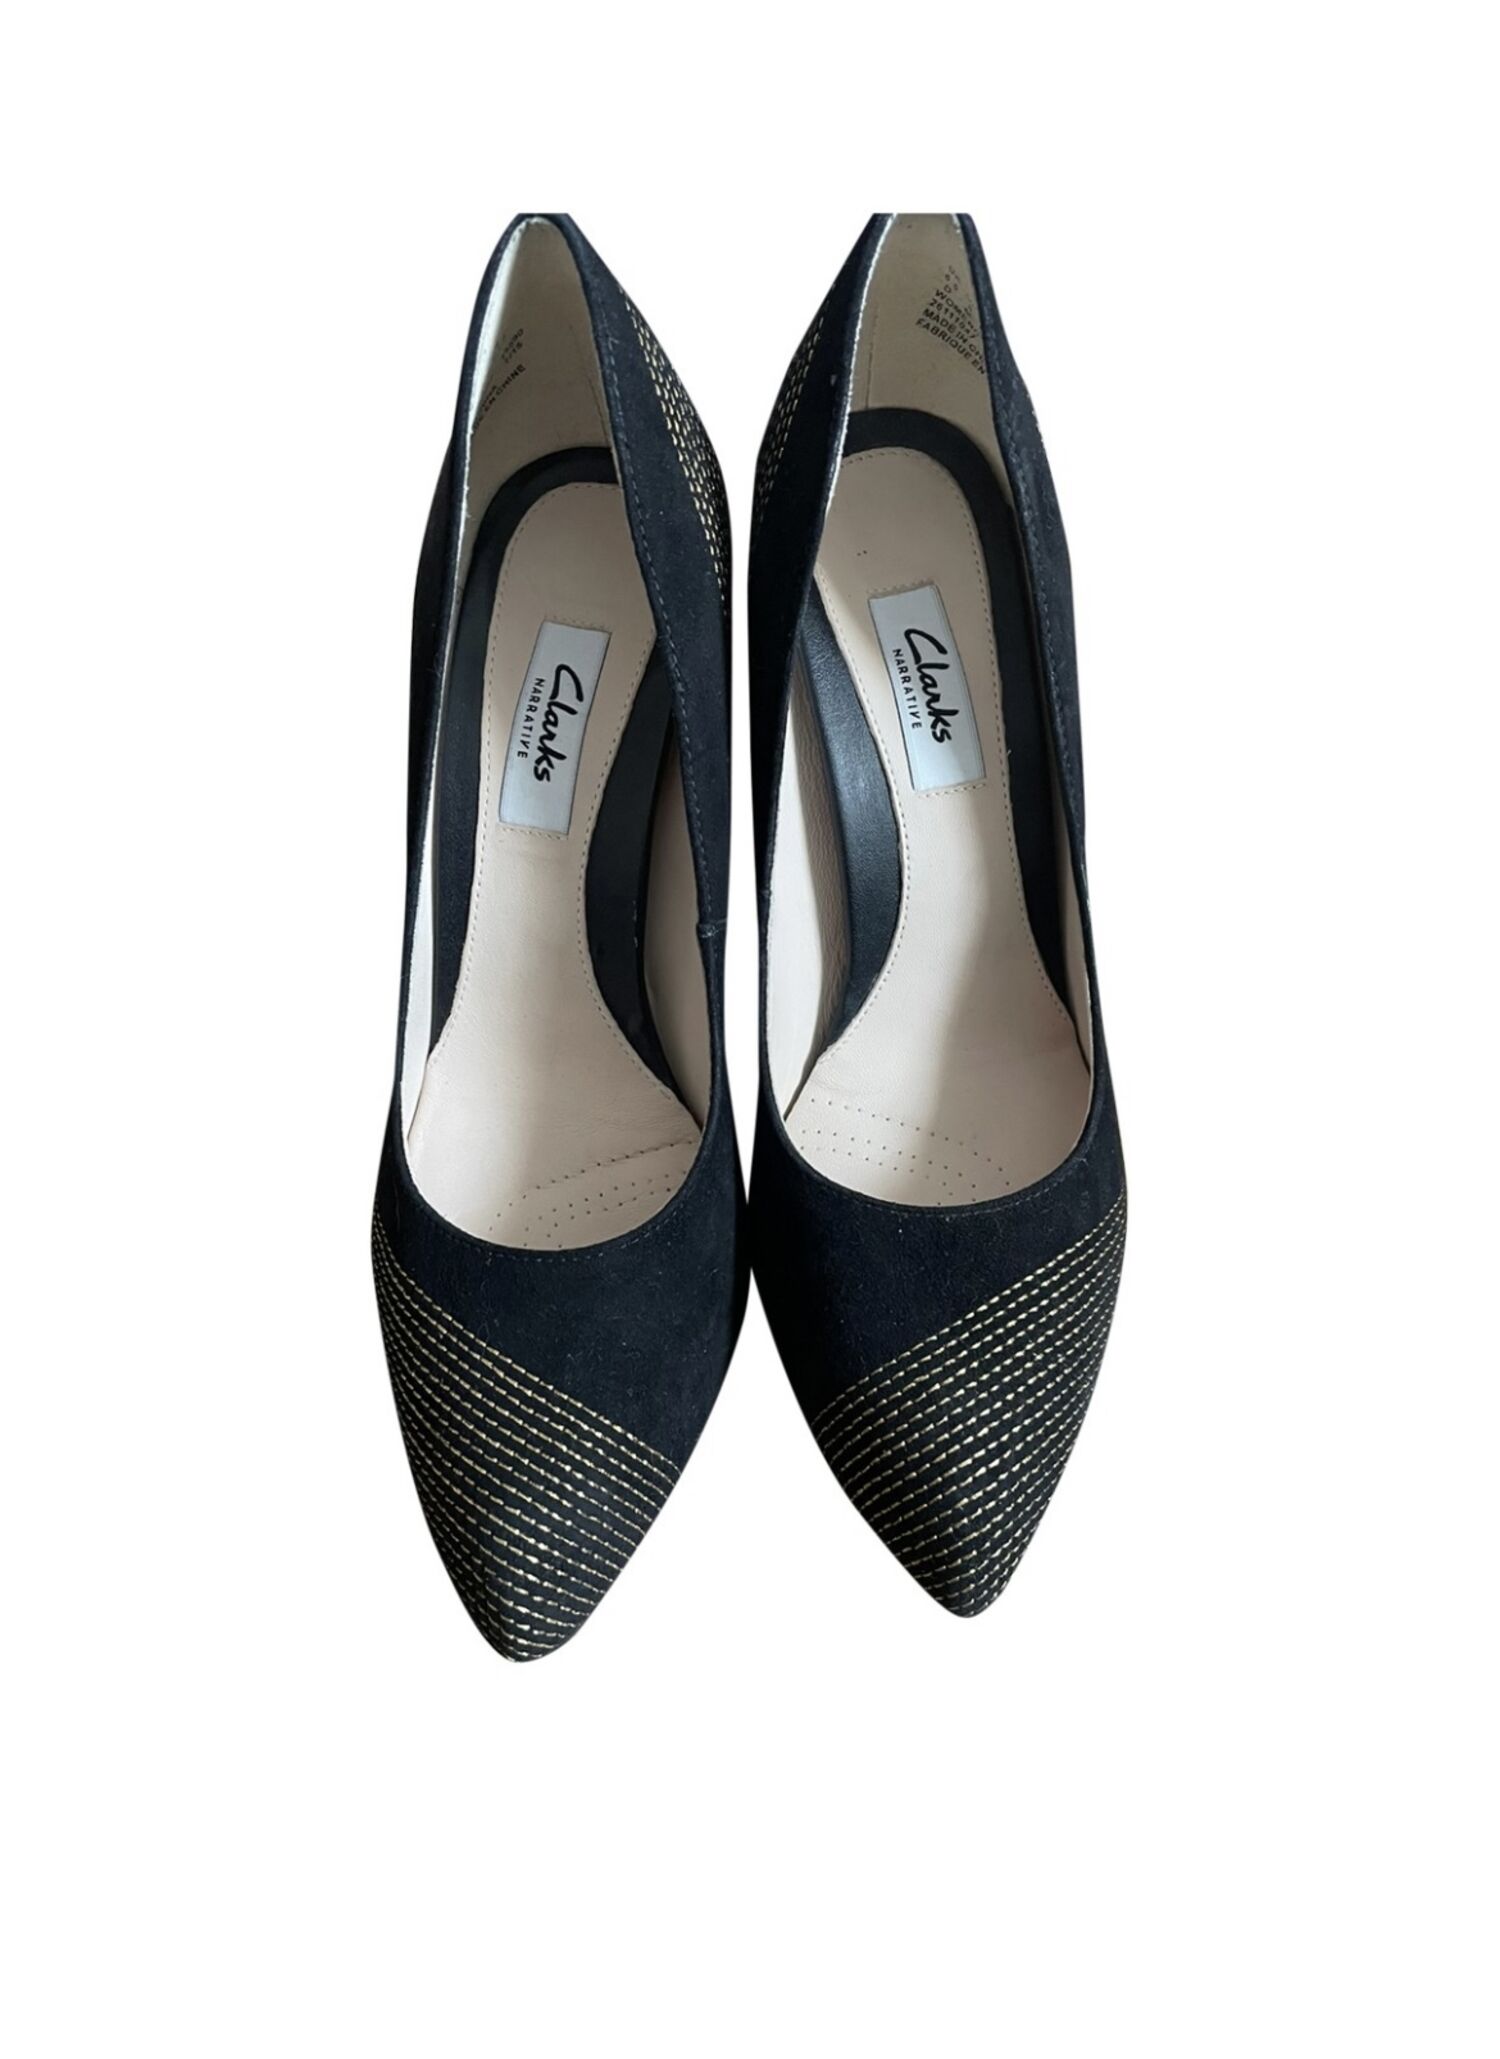 Velvet High-heels Shoes Clarks - 39, buy at 36 EUR